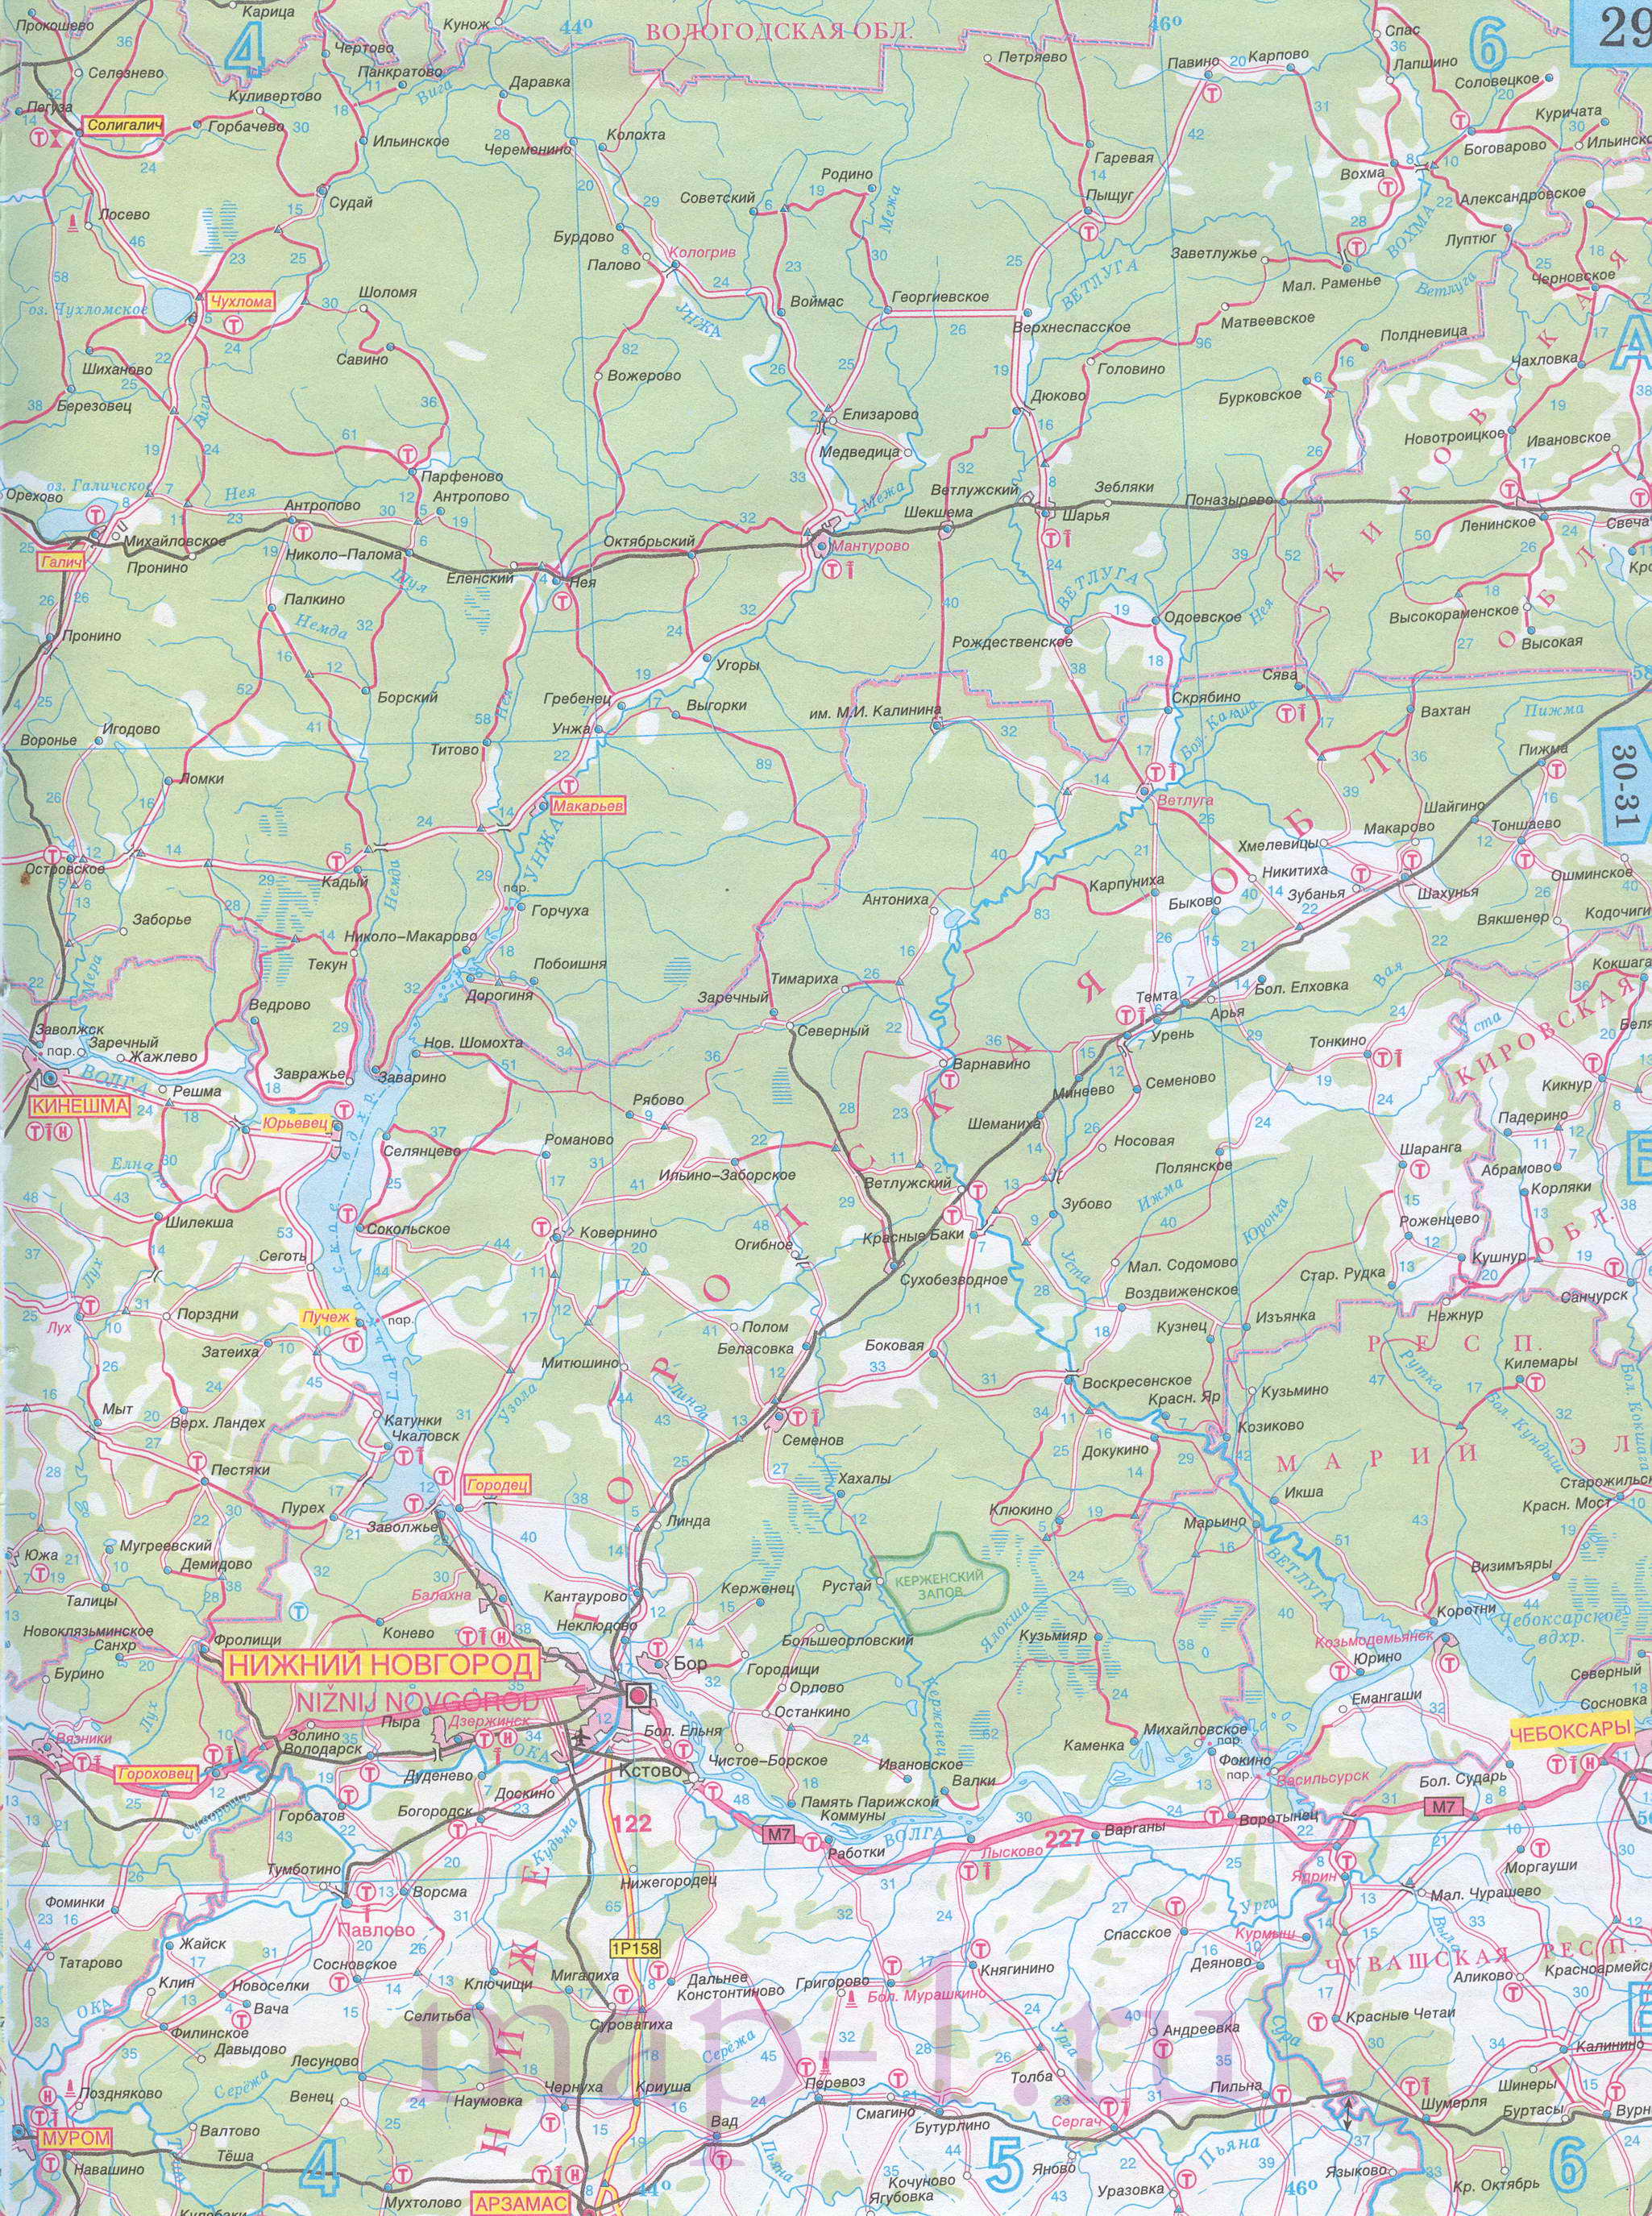 Карта Костромской области автомобильная. Подробная карта дорог - Костромская область, масштаб 1см:15км, B0 - 